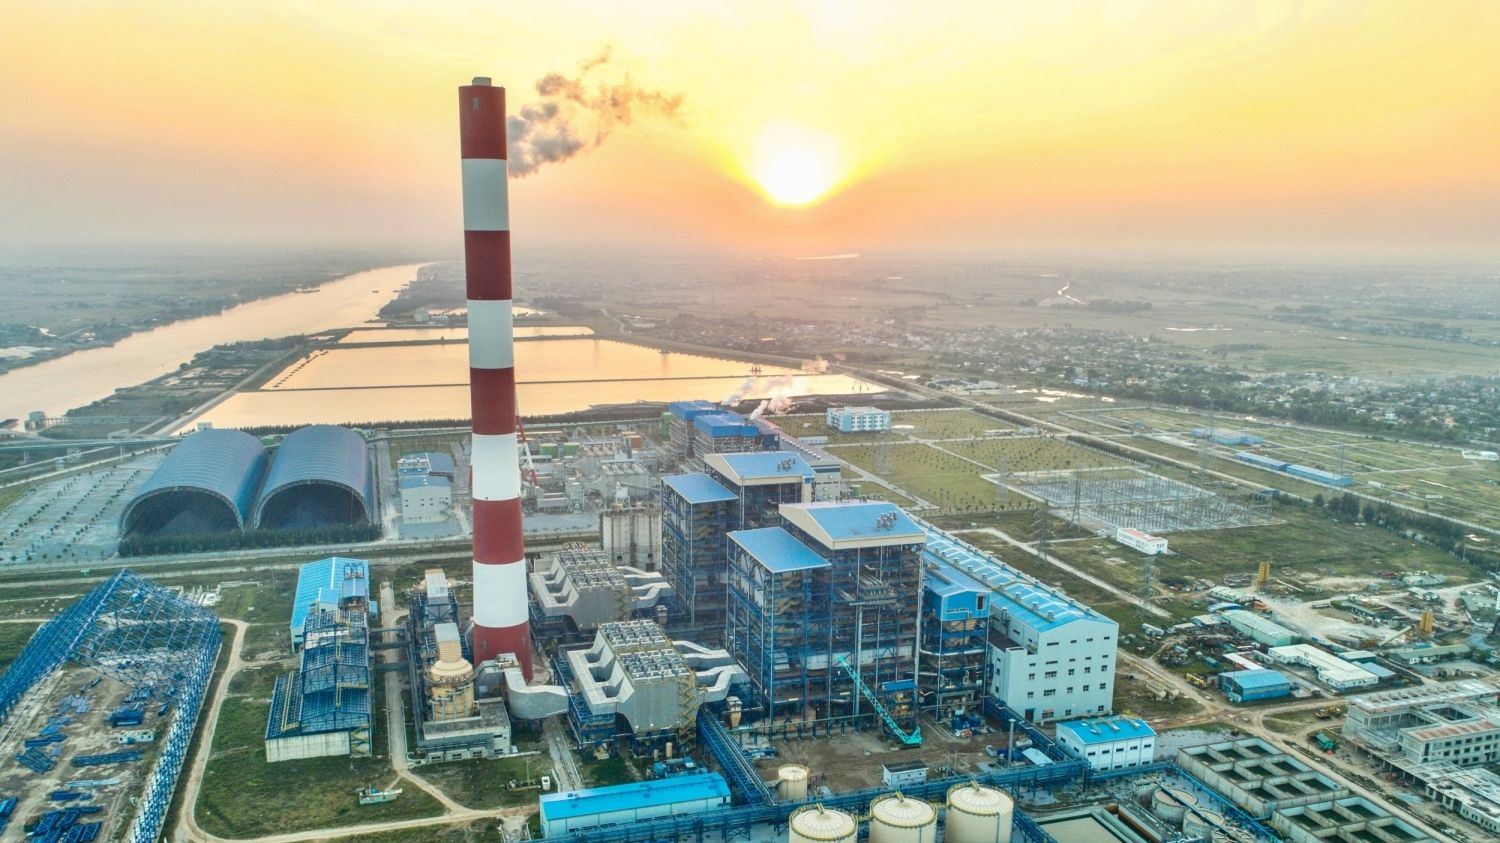 Nhà máy Nhiệt điện Thái Bình 2 gặt hái nhiều thành quả trong 6 tháng đầu năm